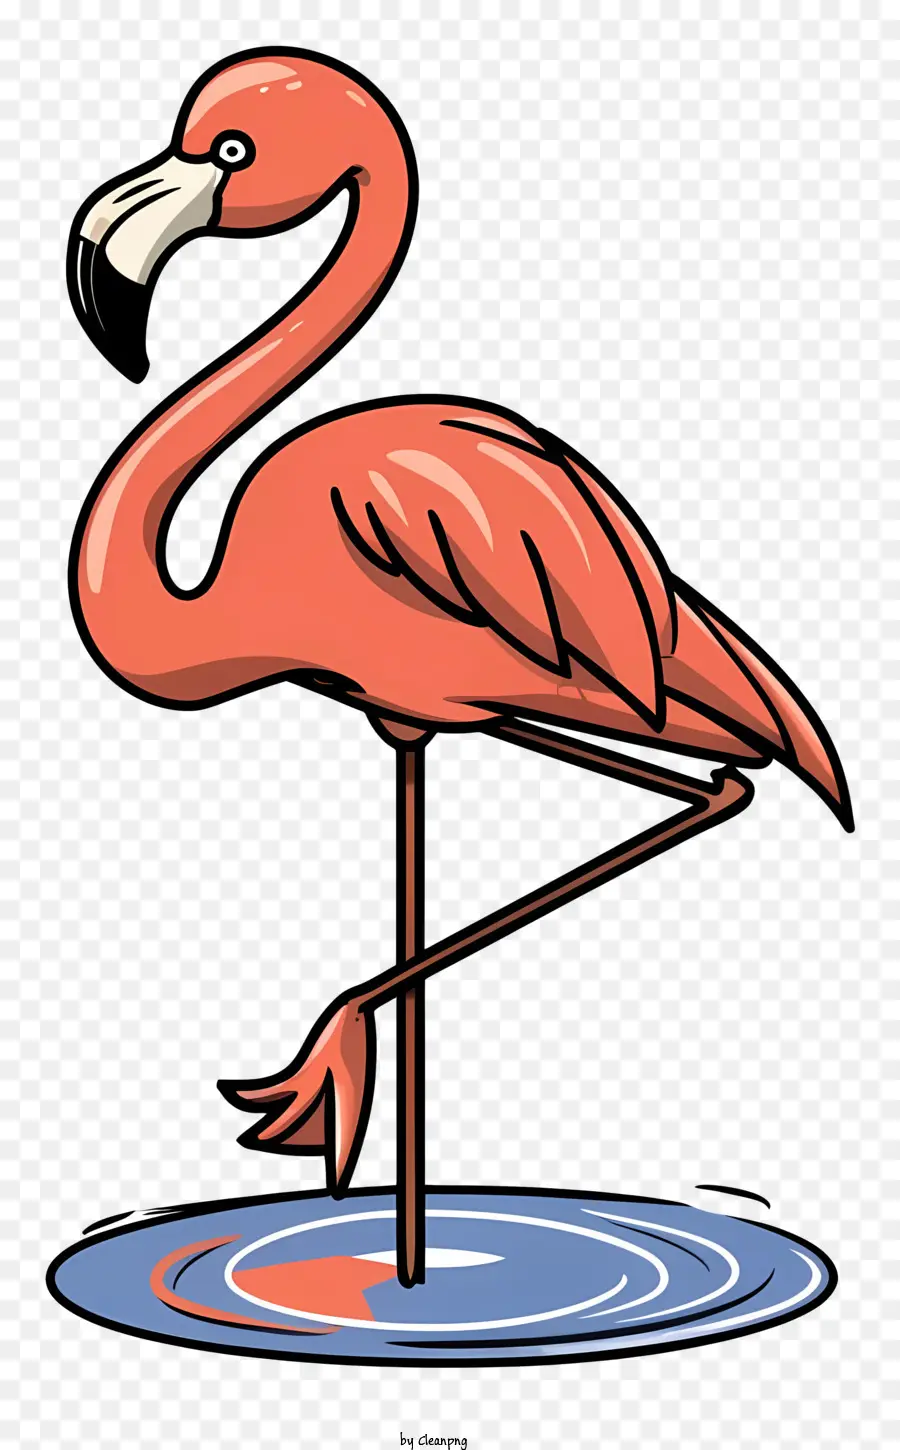 Chim hồng hạc - Red Flamingo đứng trong ao nông